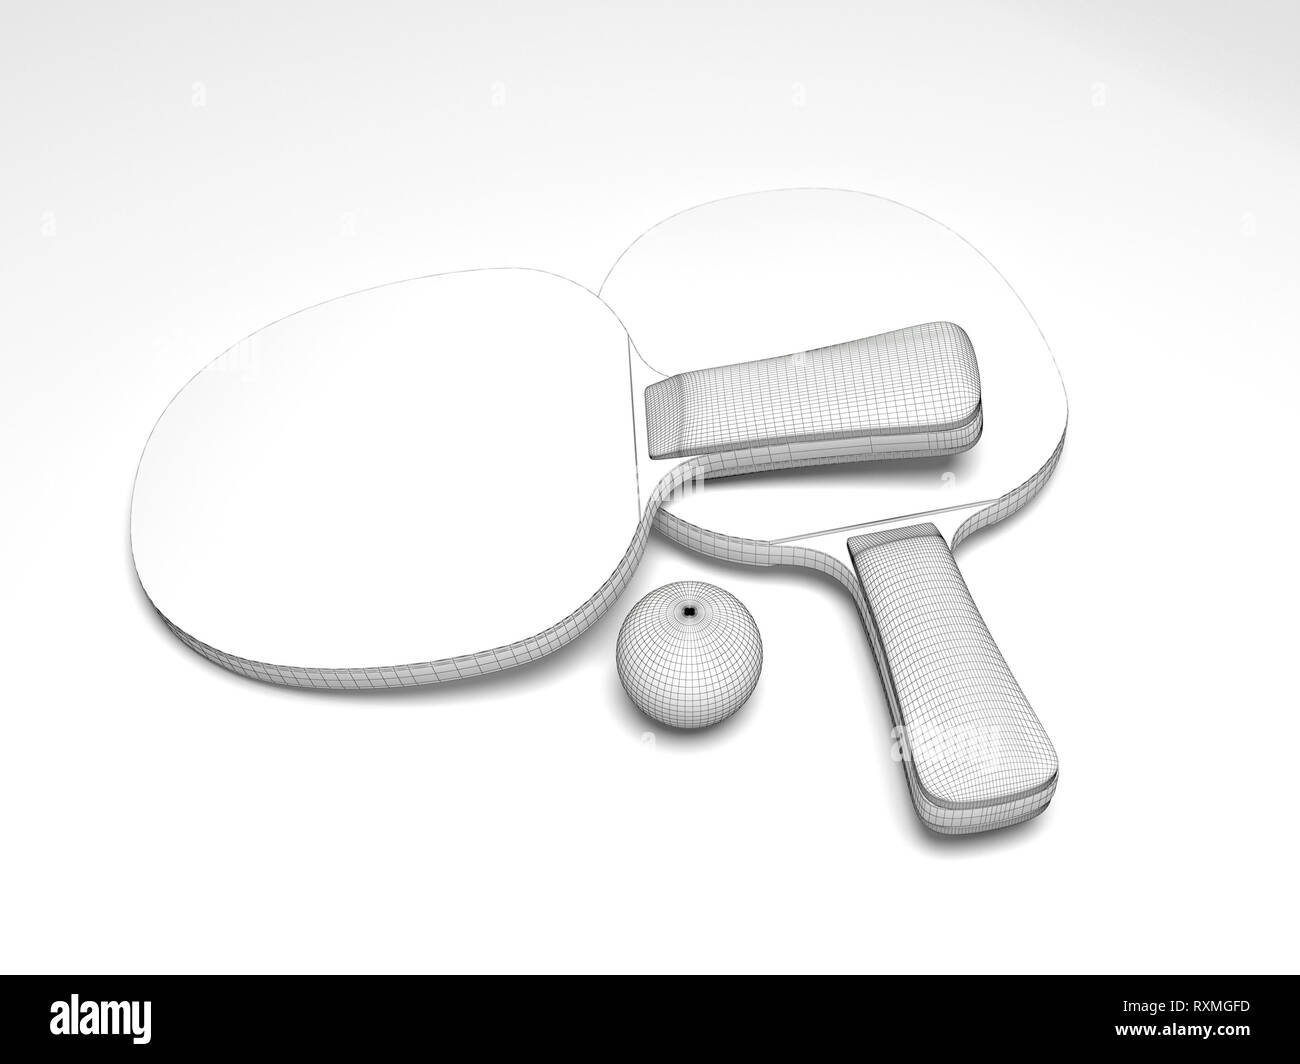 Raquettes de tennis de table et la balle. Modèle 3d design grille Banque D'Images